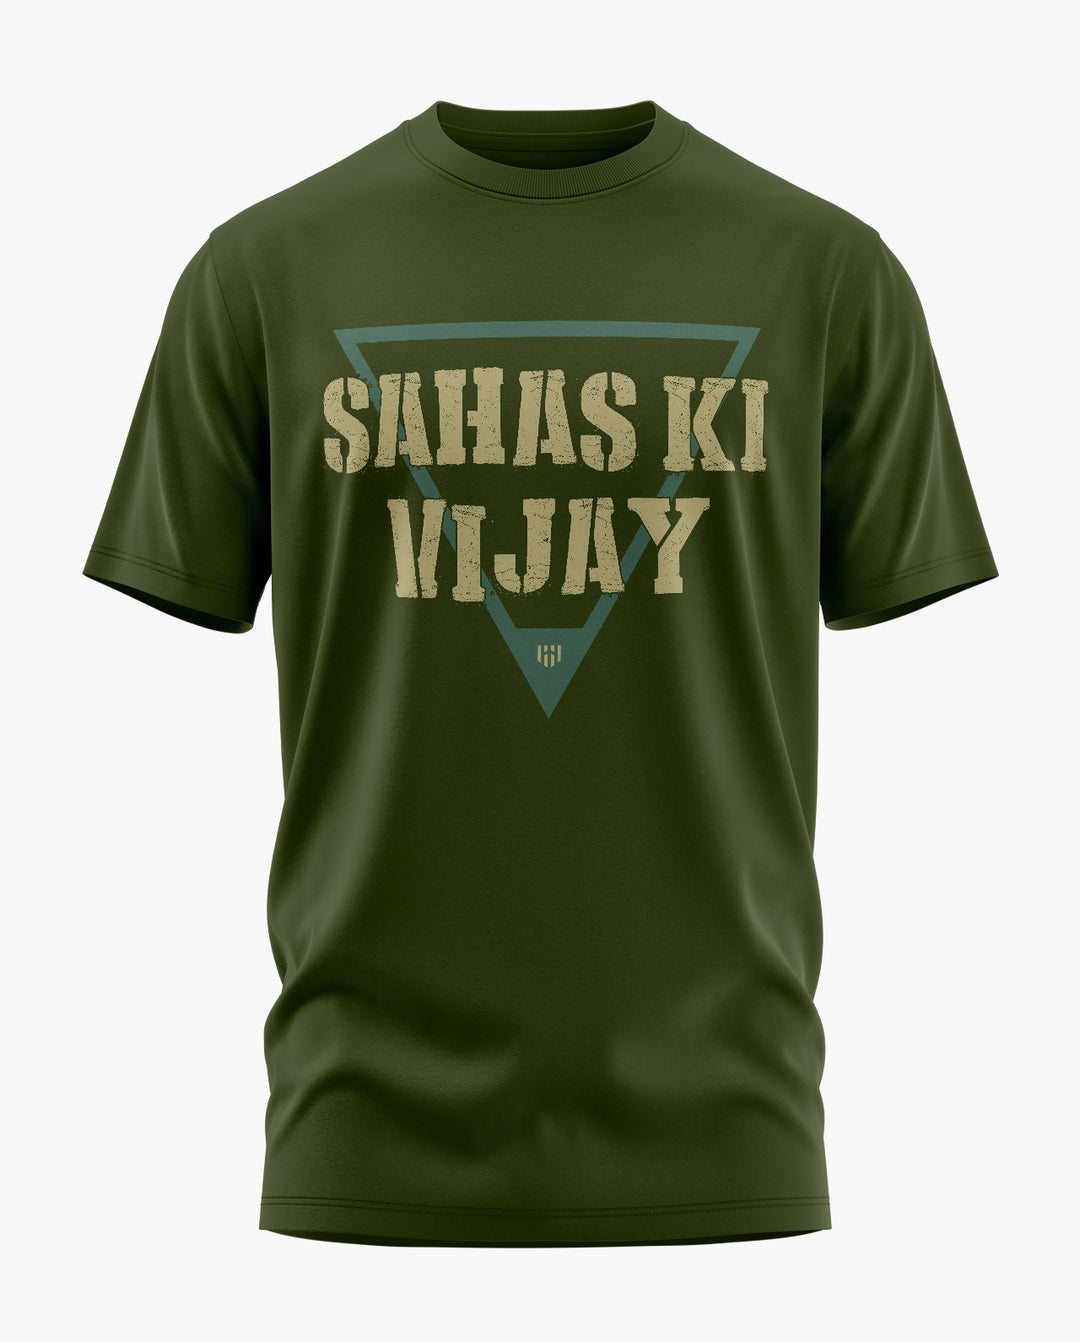 NSG SAHAS KI VIJAY SF T-Shirt